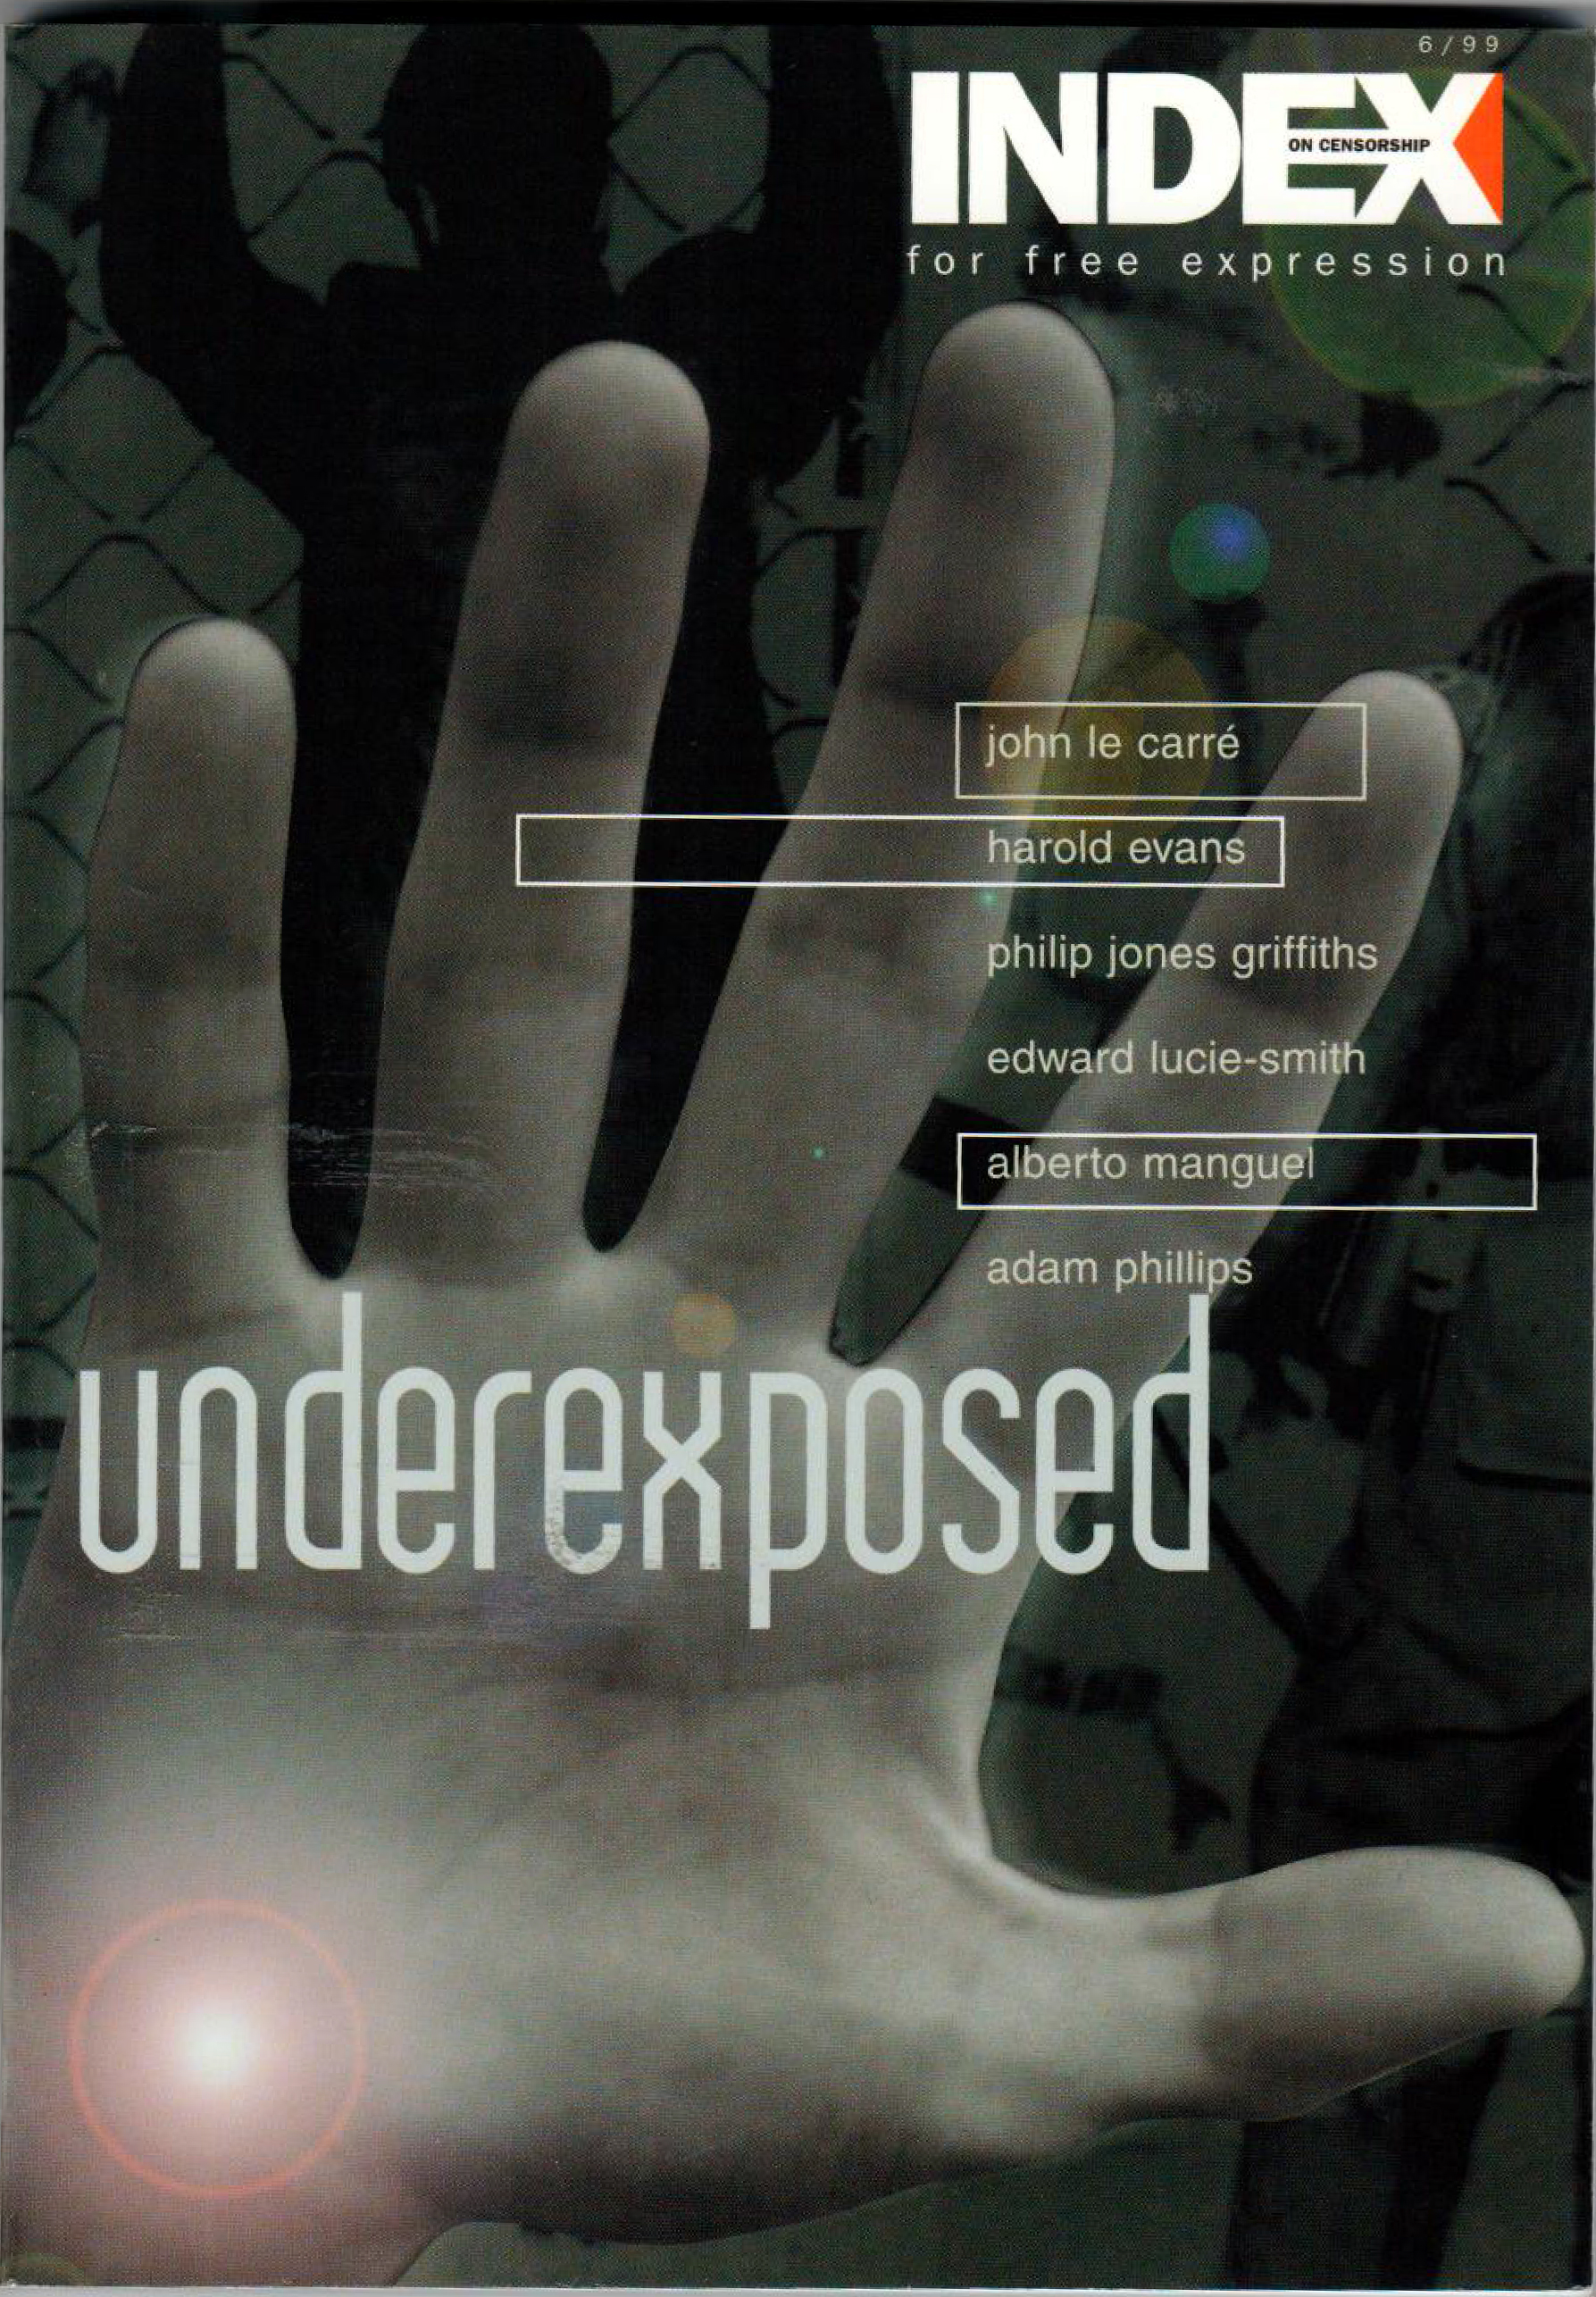 Underexposed